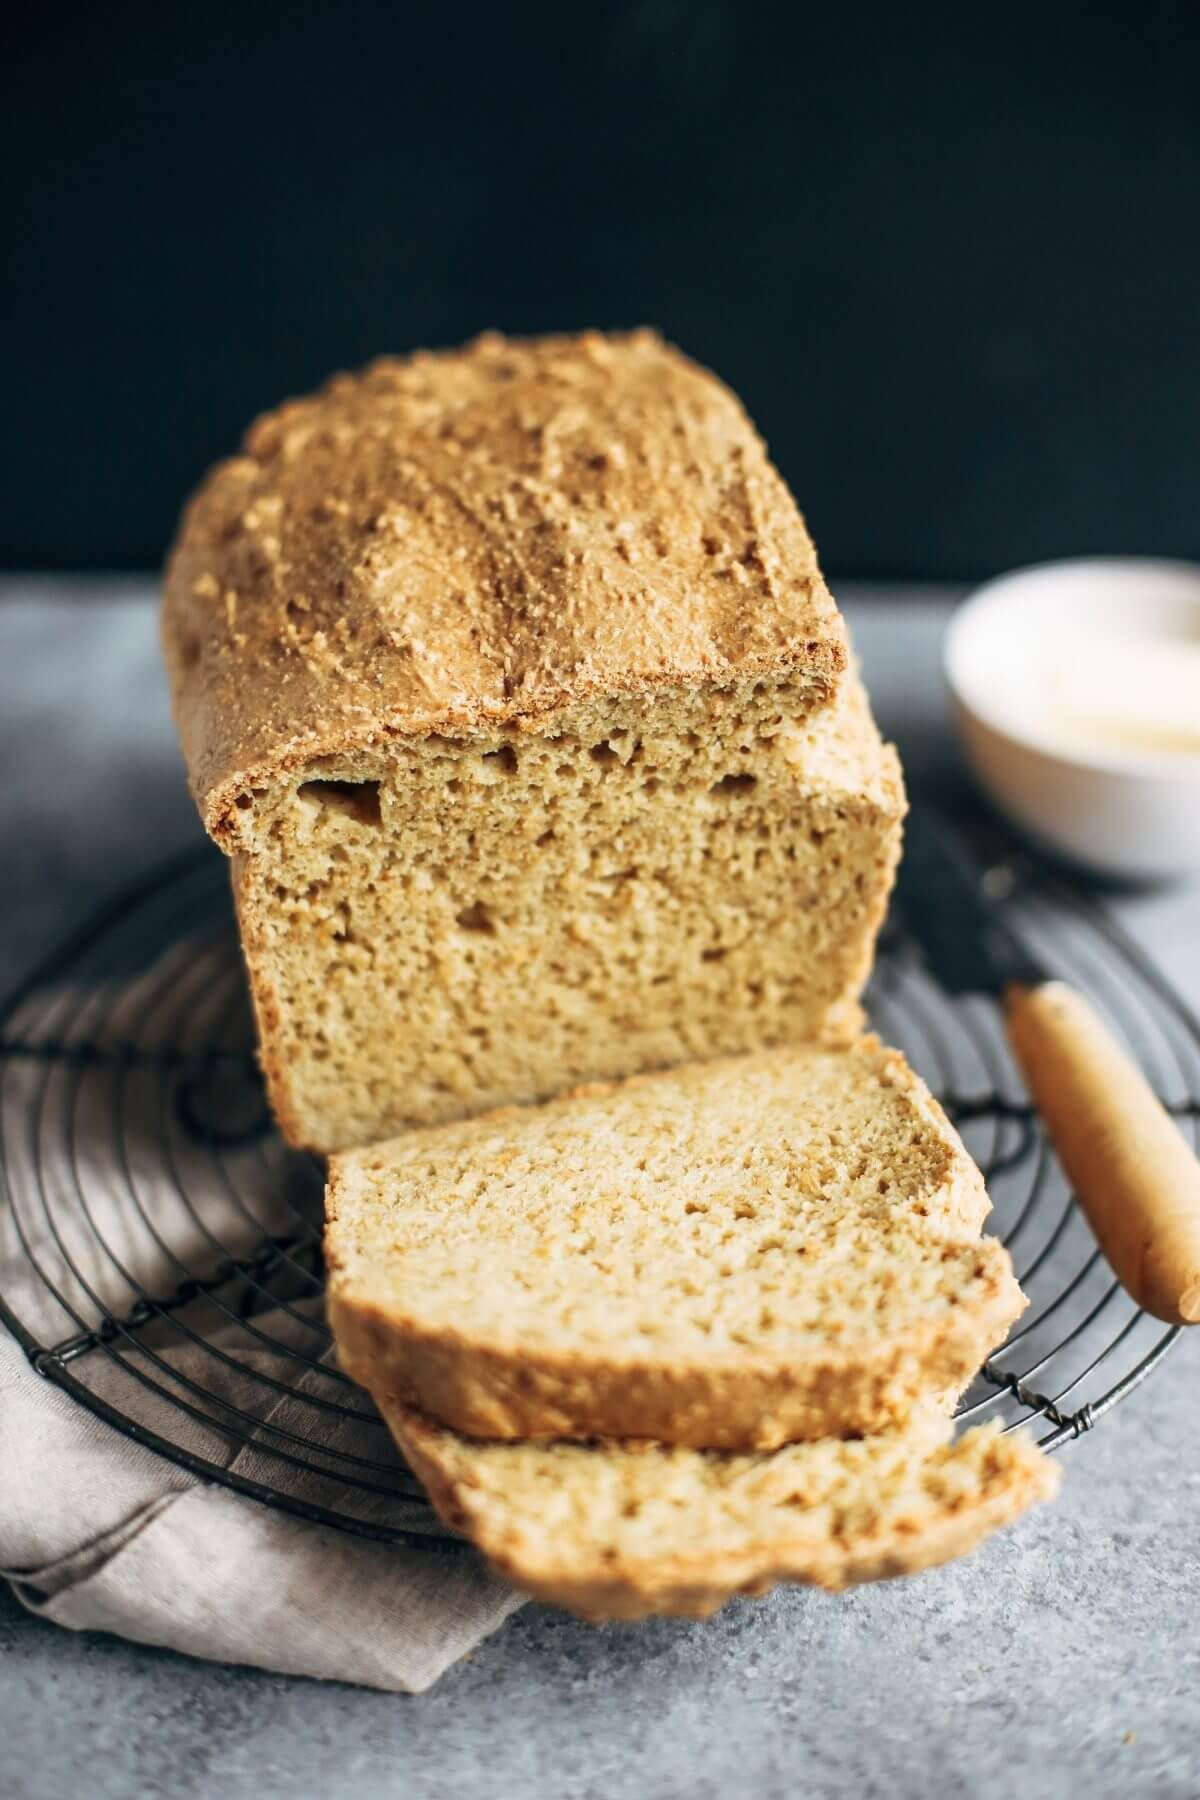 How To Make Keto Sandwich Bread
 Best Keto Gluten Free Bread Recipe in 2019